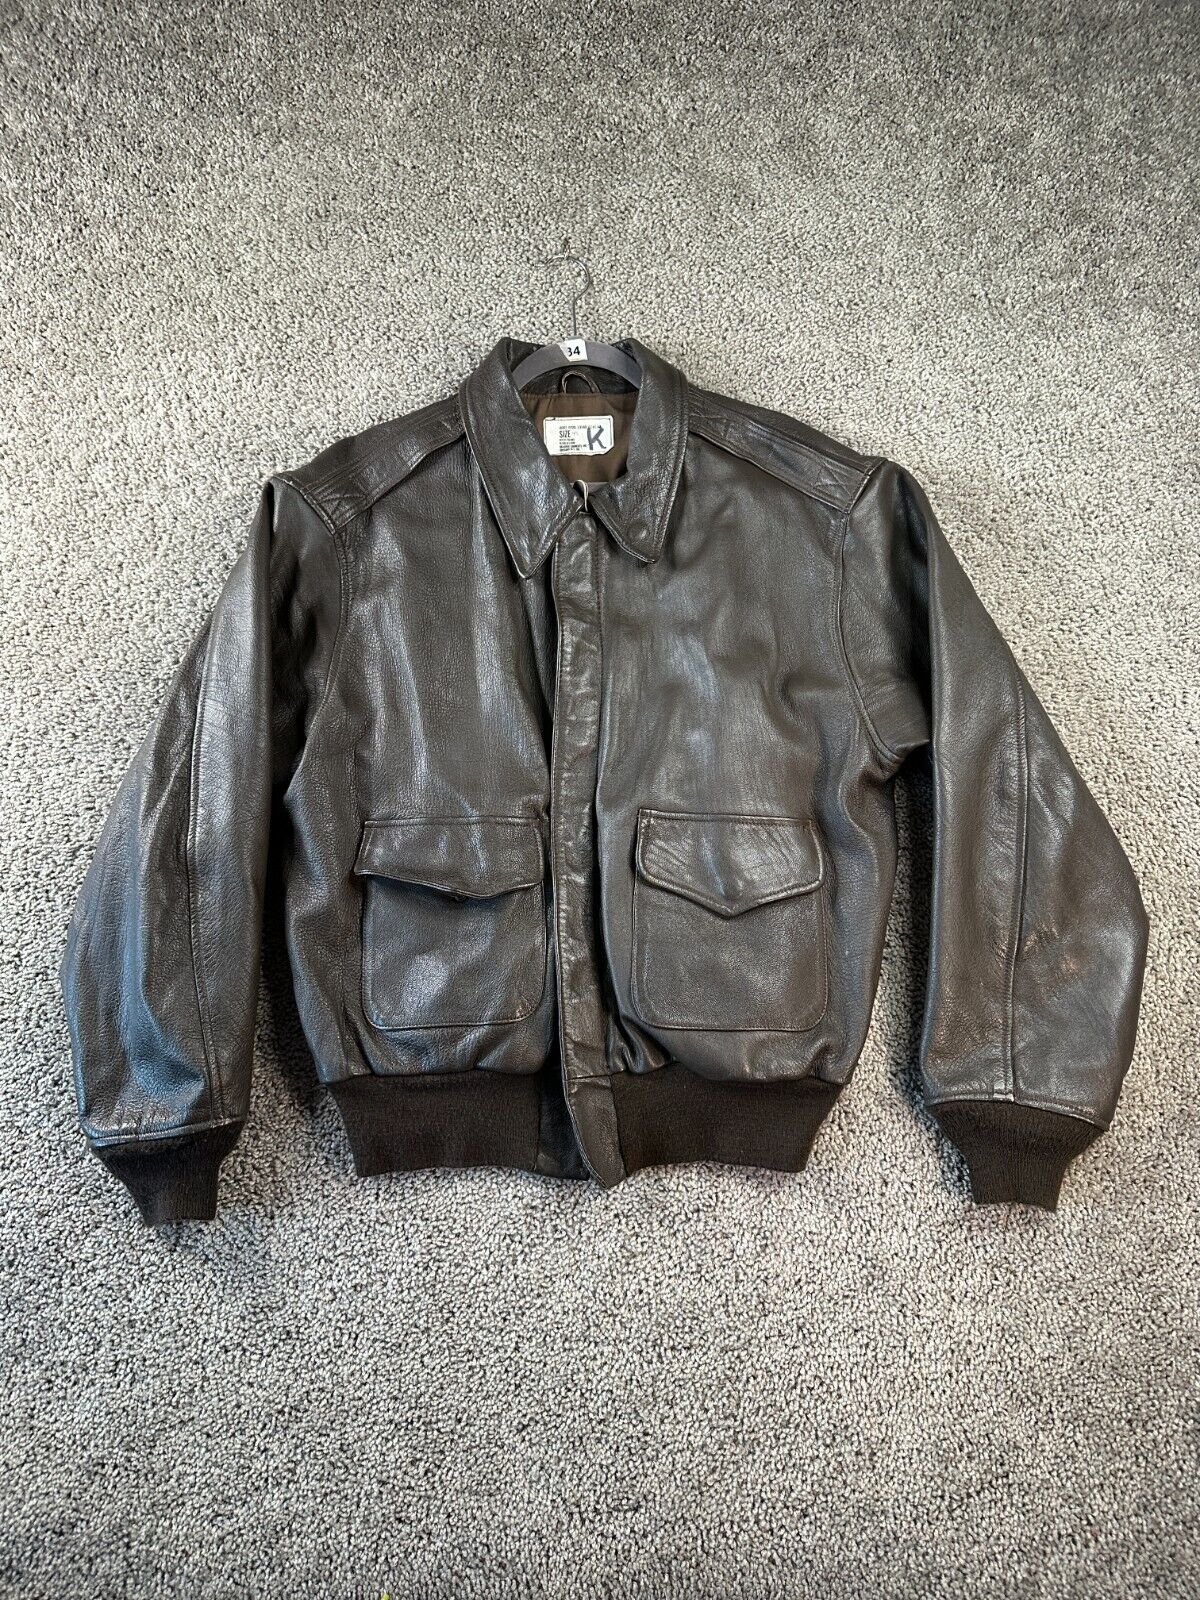 VINTAGE Branded Garments A 2 Flight Bomber Jacket Mens 48 Brown Leather USAF